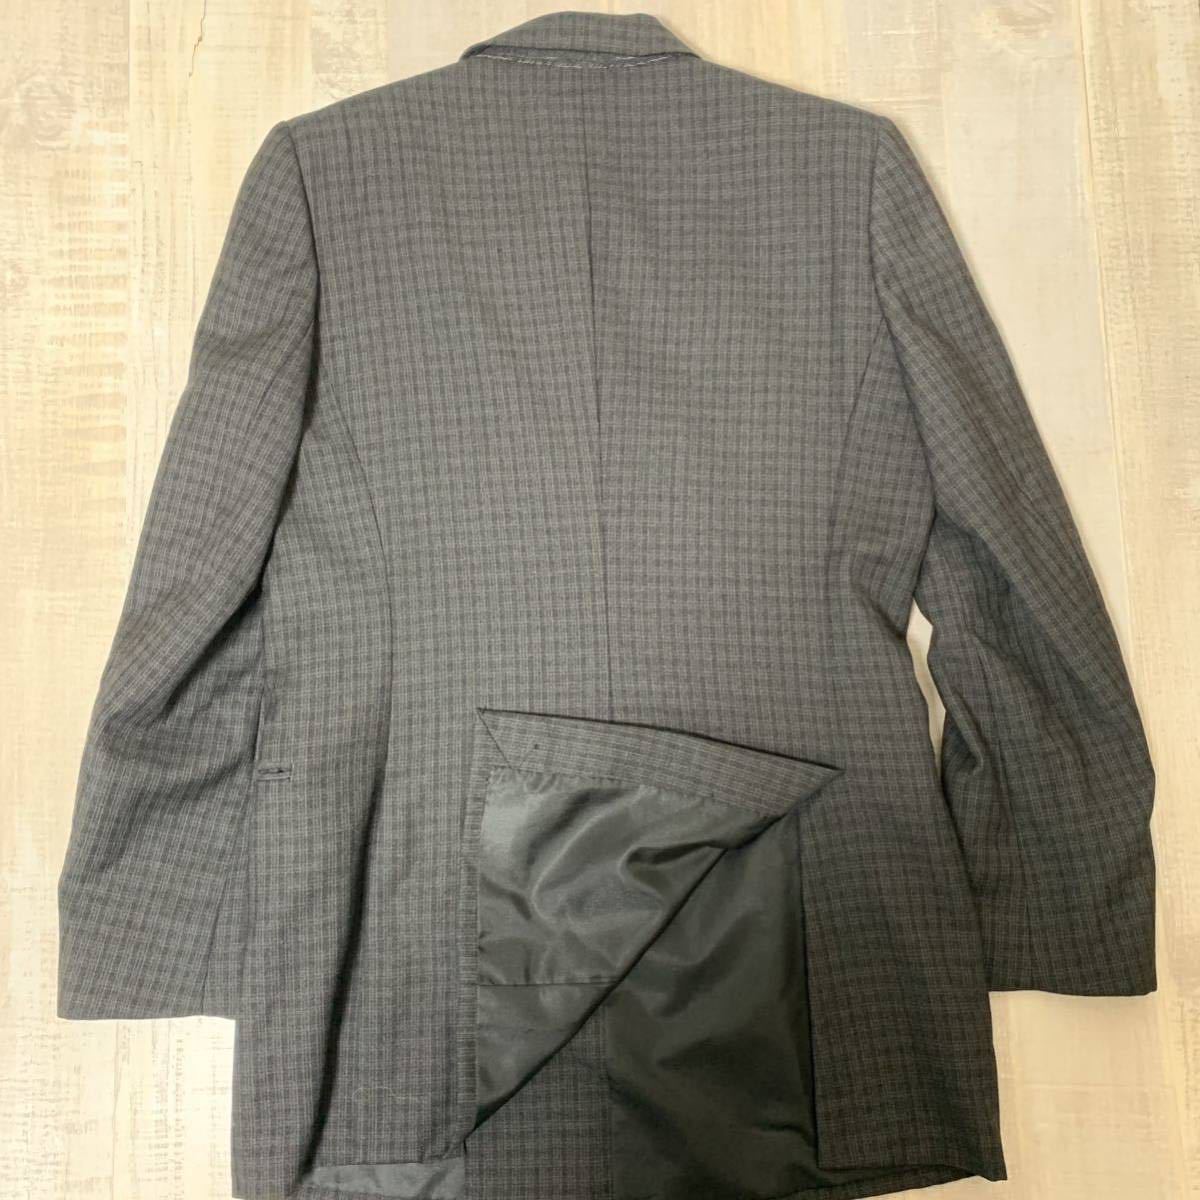 [ сделано в Японии шерсть Mark входить ]KATHARINE HAMNETT шерсть 100% двойной breast проверка tailored jacket Katharine Hamnett L